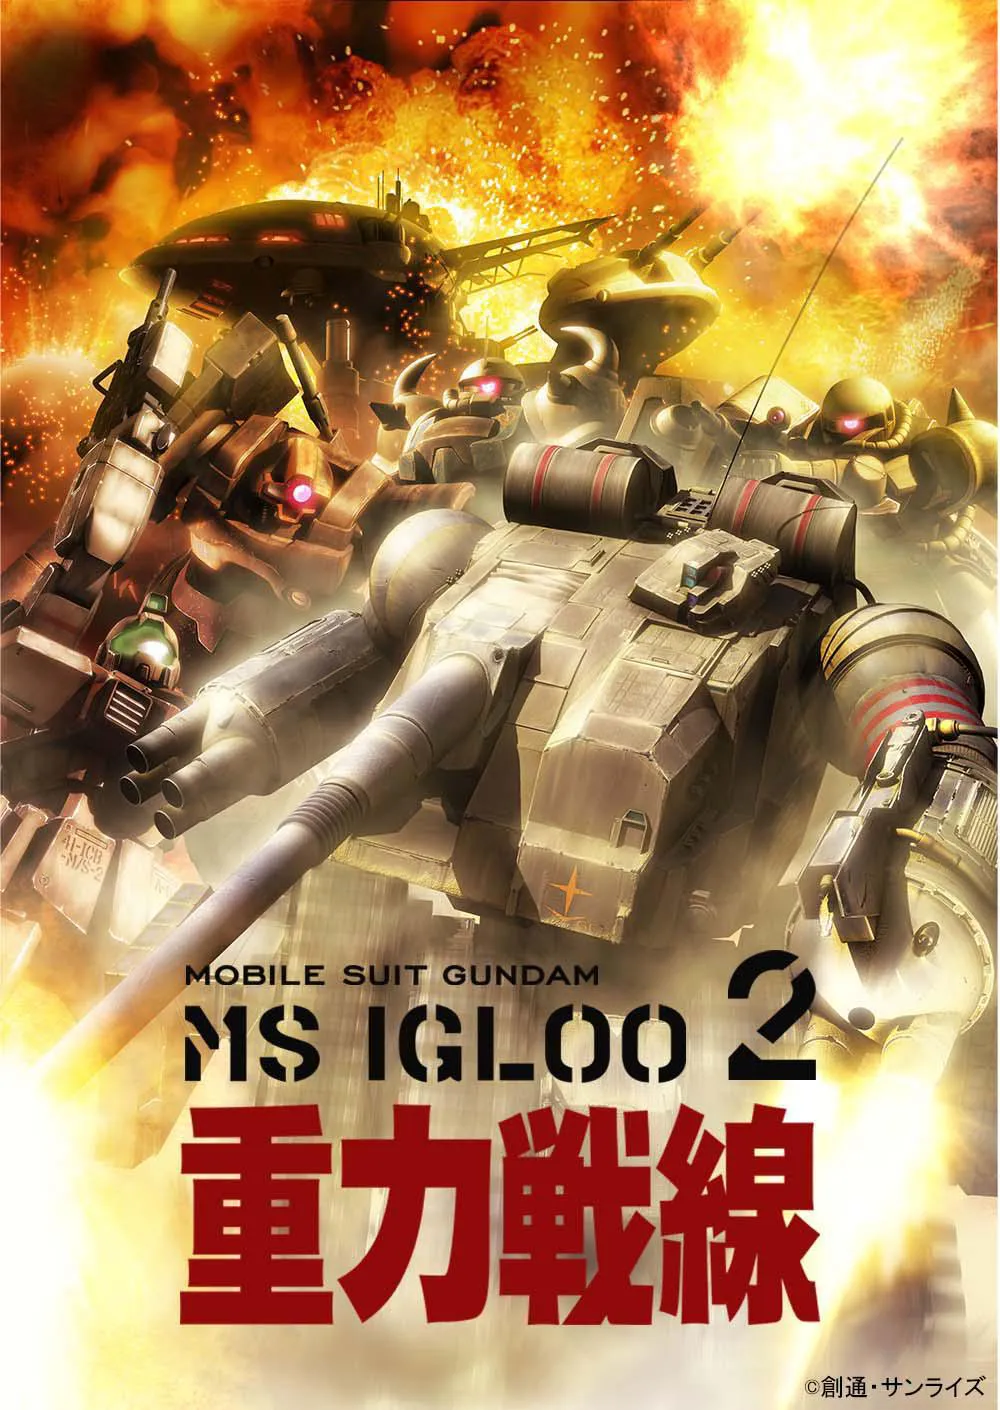 地球連邦軍の視点から“一年戦争”の生々しい戦場を描いたシリーズ第3作「機動戦士ガンダム MS IGLOO 2 重力戦線」